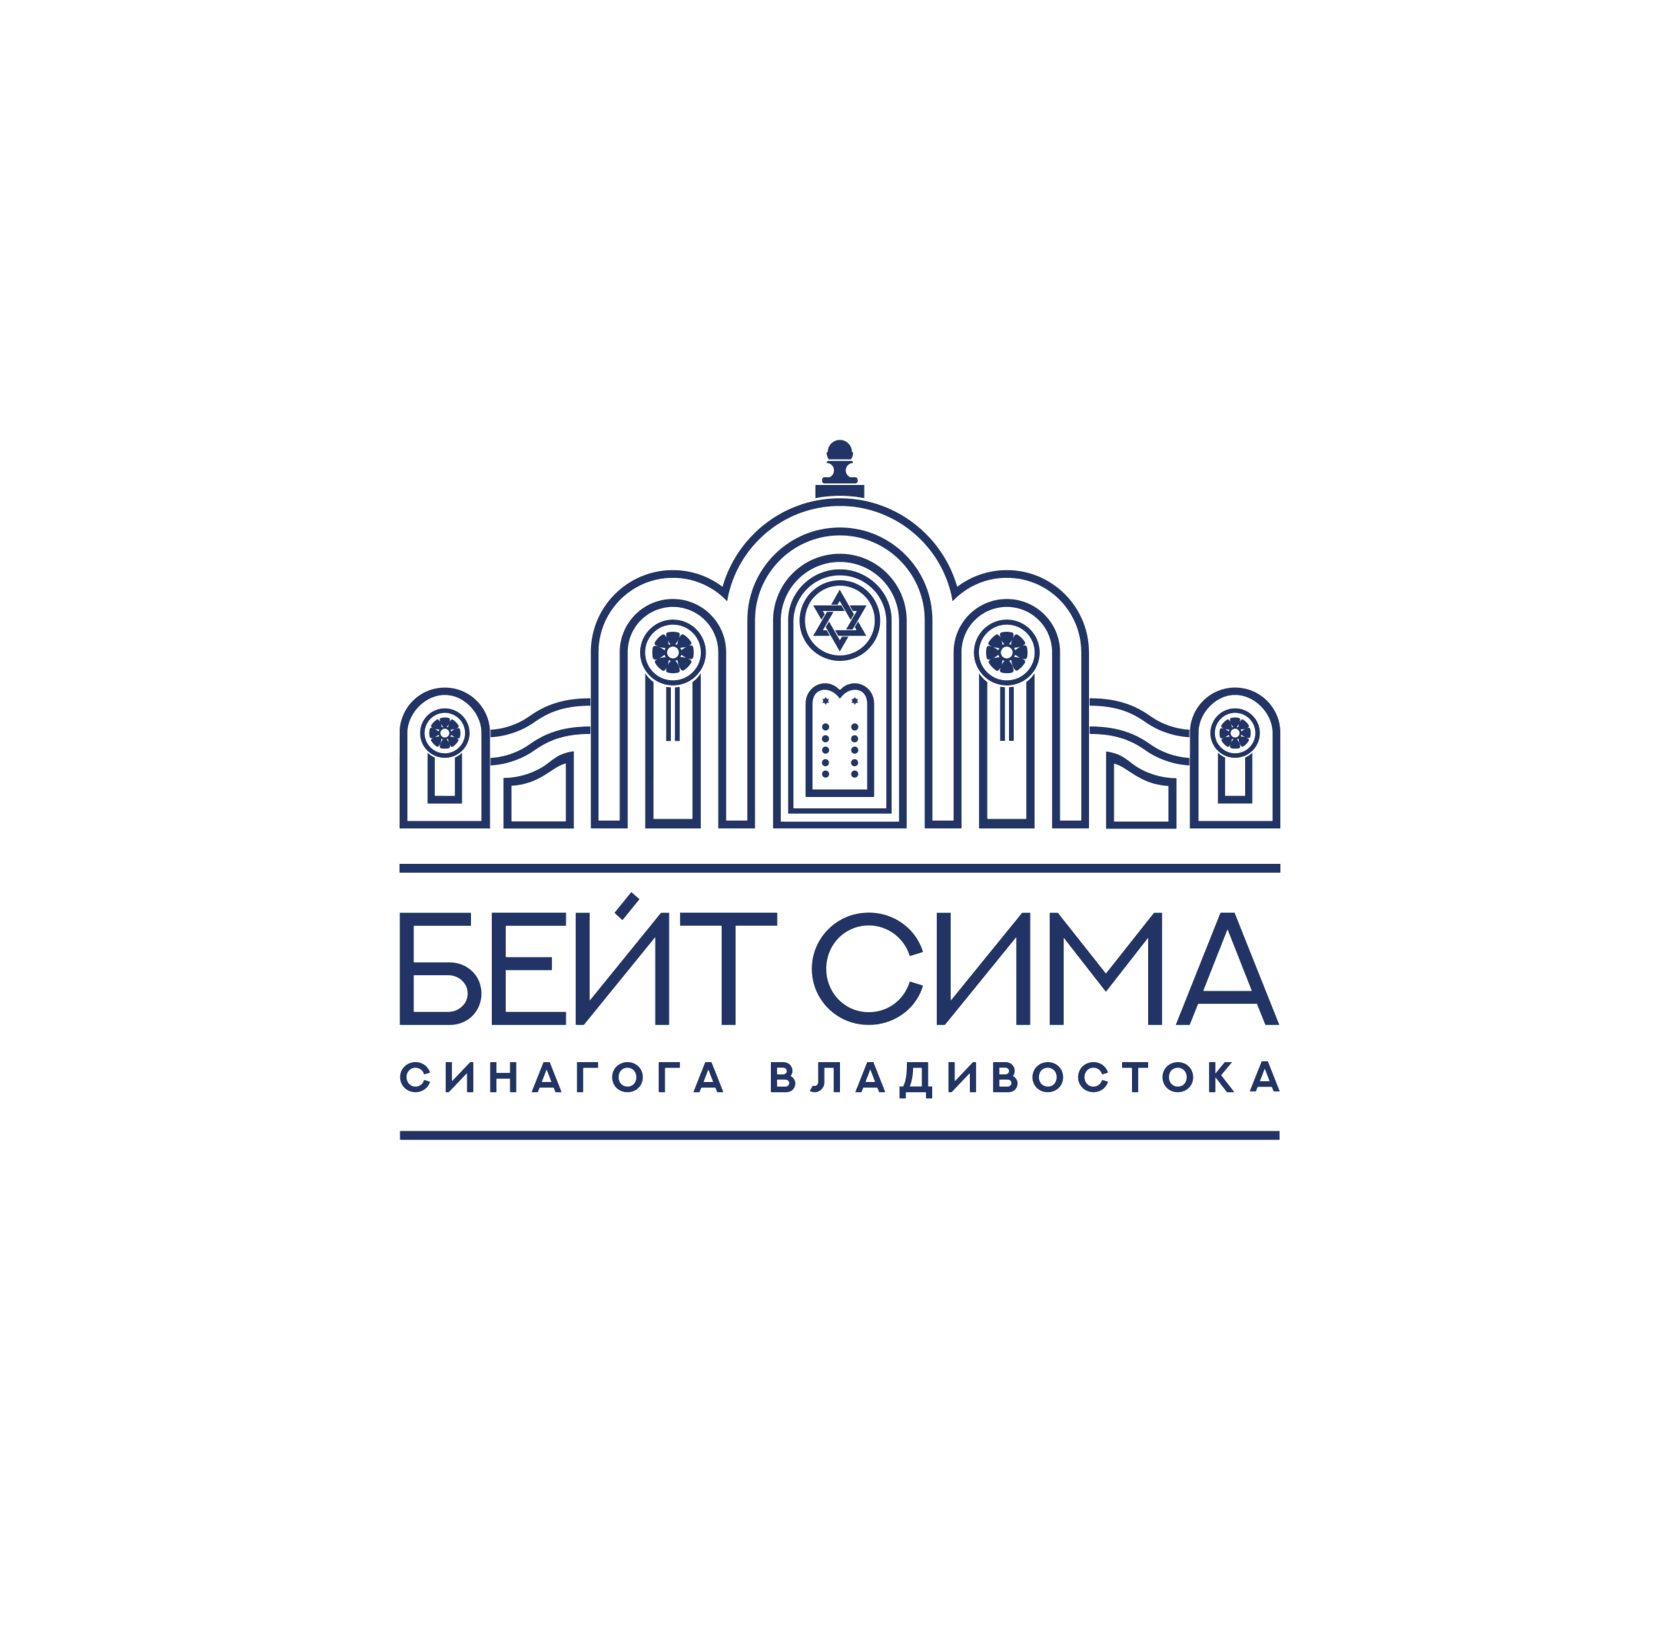 Община владивосток. Владивостокская синагога.